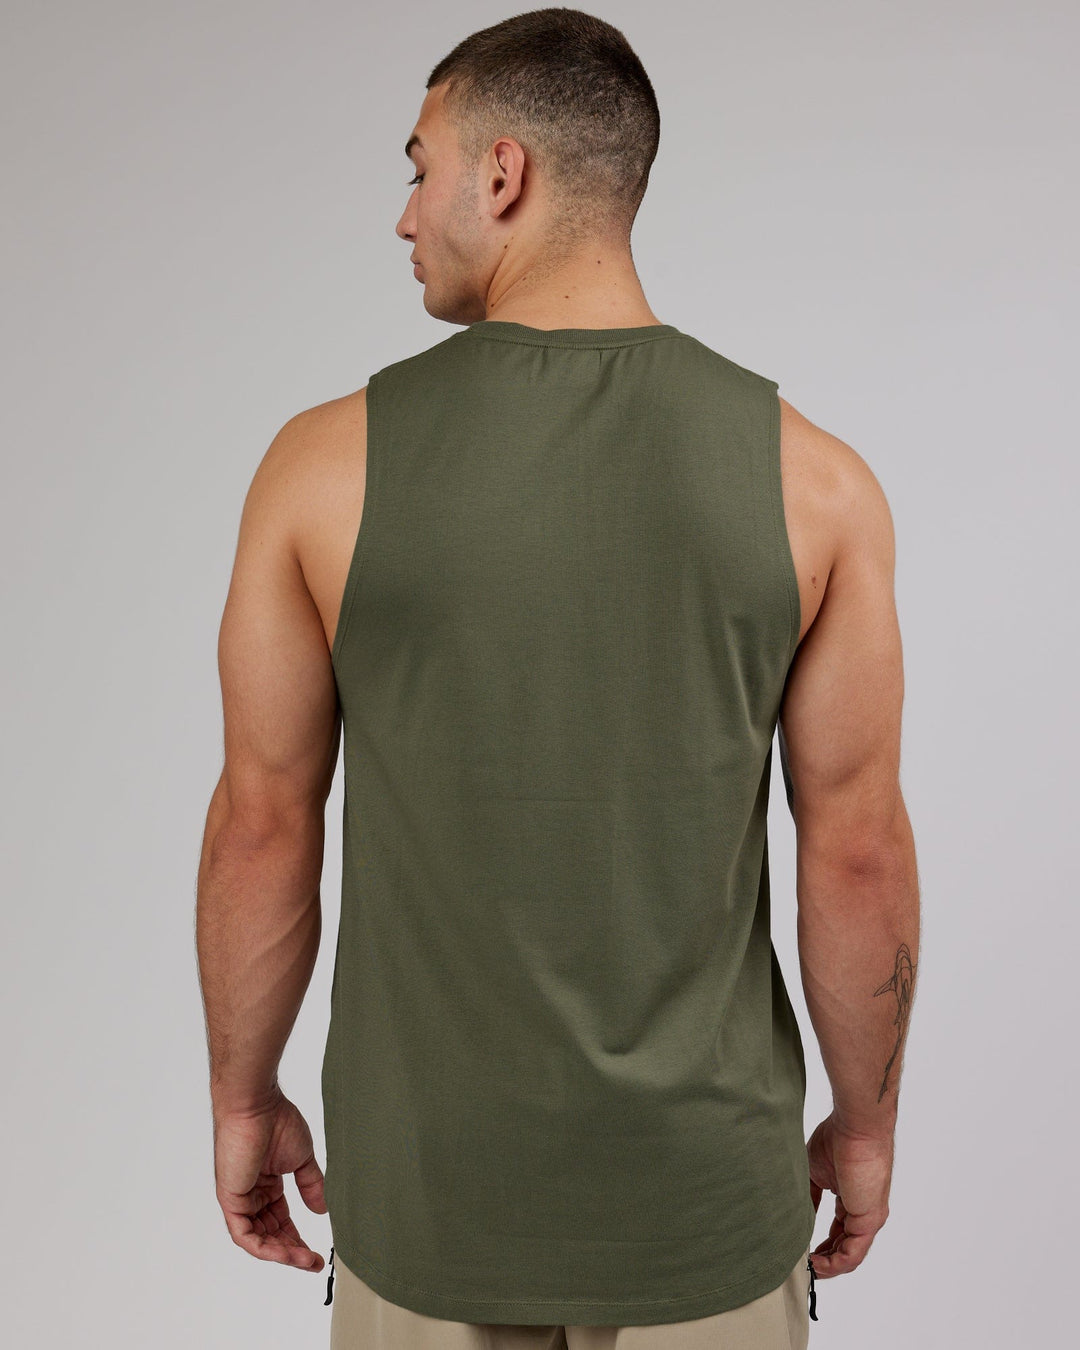 Man wearing PimaFLX Tank - Olive Fade